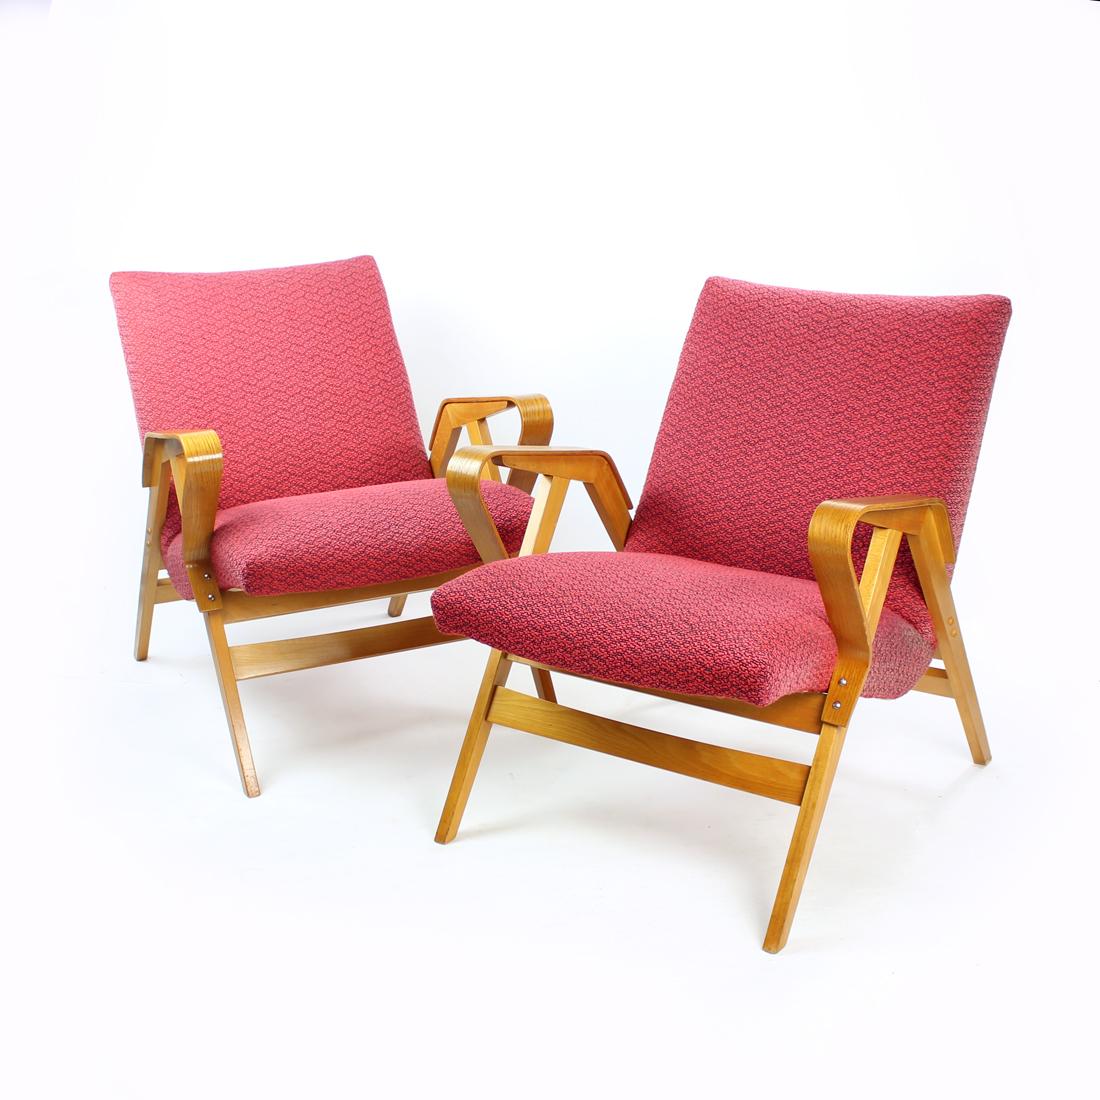 Schöner Sessel, hergestellt von der Firma Tatra in der Tschechoslowakei in den 1960er Jahren. Das ursprüngliche Label ist noch angebracht. Die Stühle sind ein bekanntes und bequemes Modell, das in der Tschechoslowakei hergestellt wird. Entworfen auf